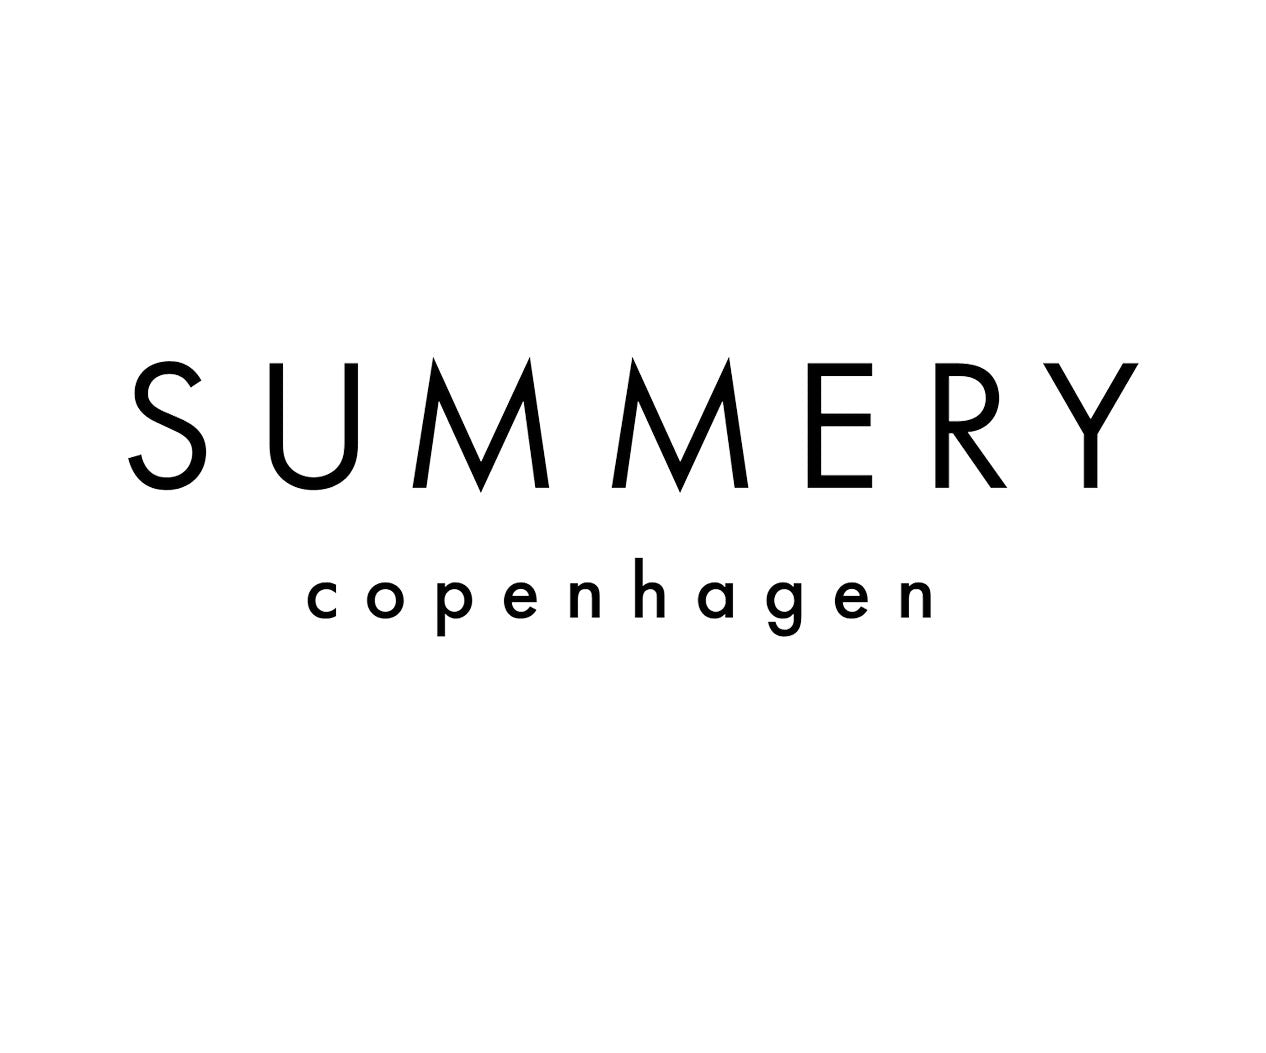 Summery Copenhagen